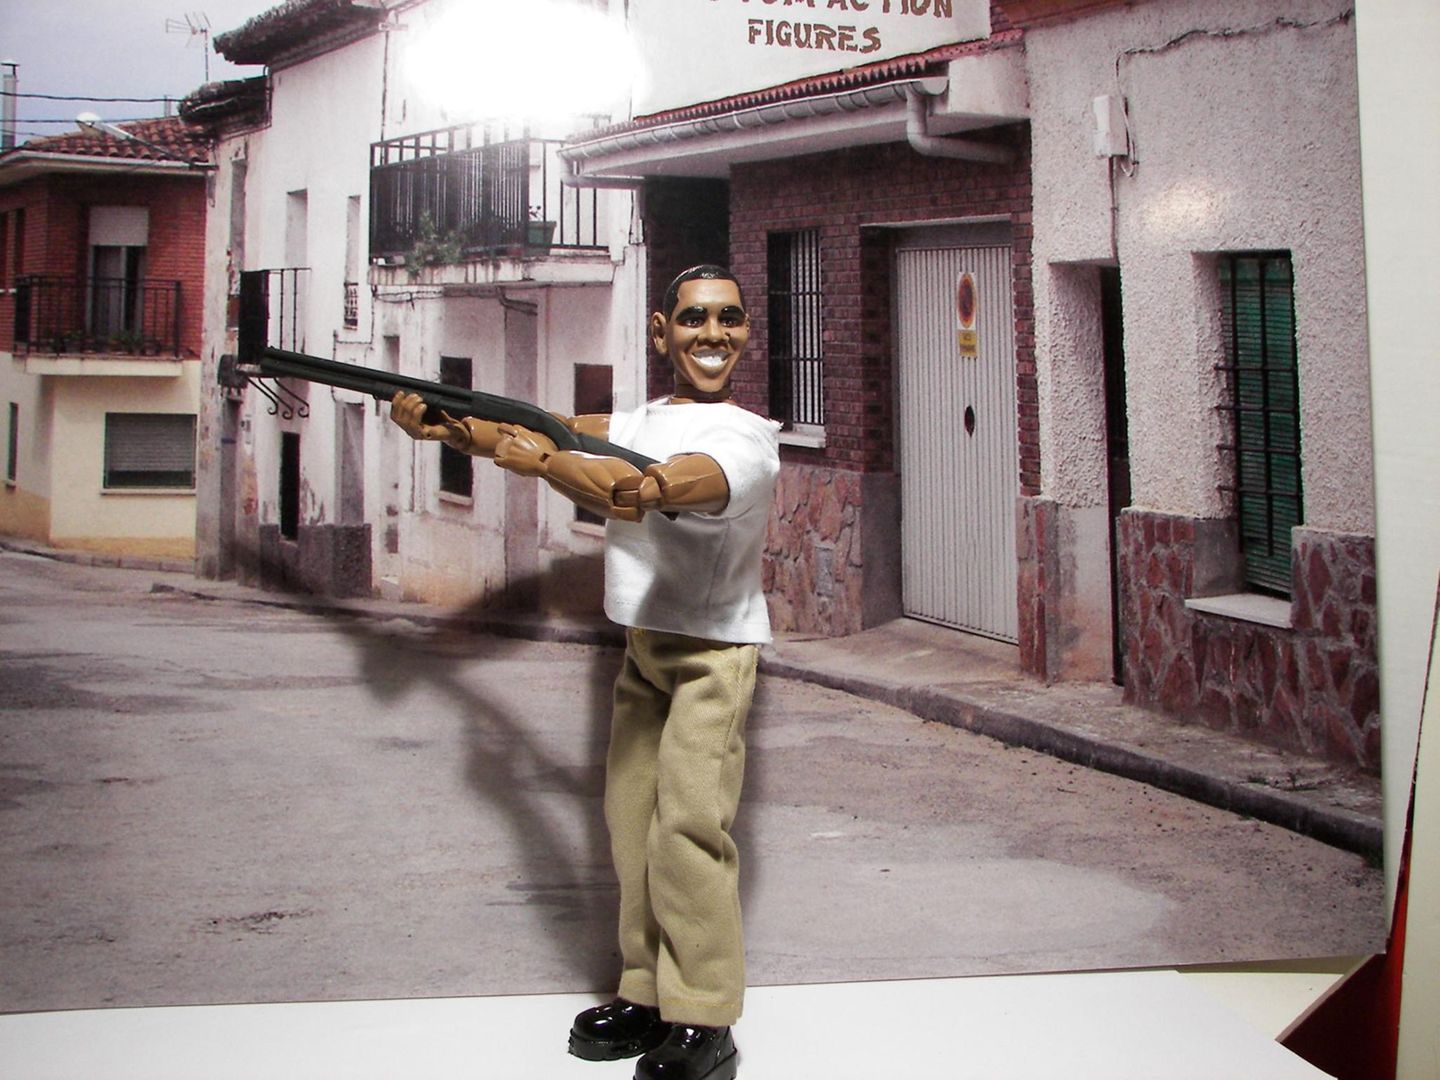 In den USA kann man ab sofort diese Actionfigur von Barack Obama kaufen. Inspiriert wurde der Hersteller durch ein Foto, das den Präsidenten beim Schießen in Camp David zeigt.